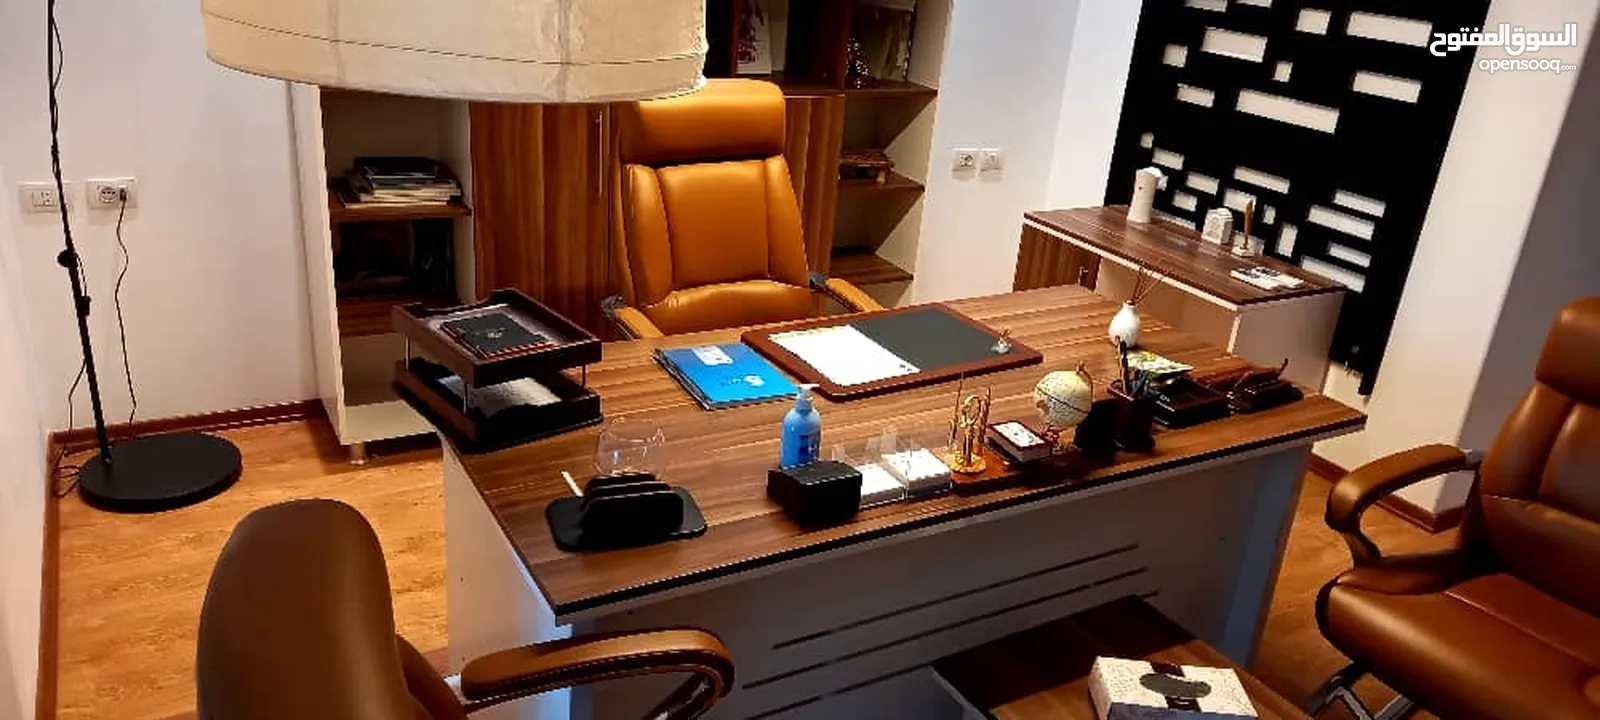 مكتب مجهز بالكامل للأجر في دقادوستة مع مطبخ و حمام و اثاث مكتبي